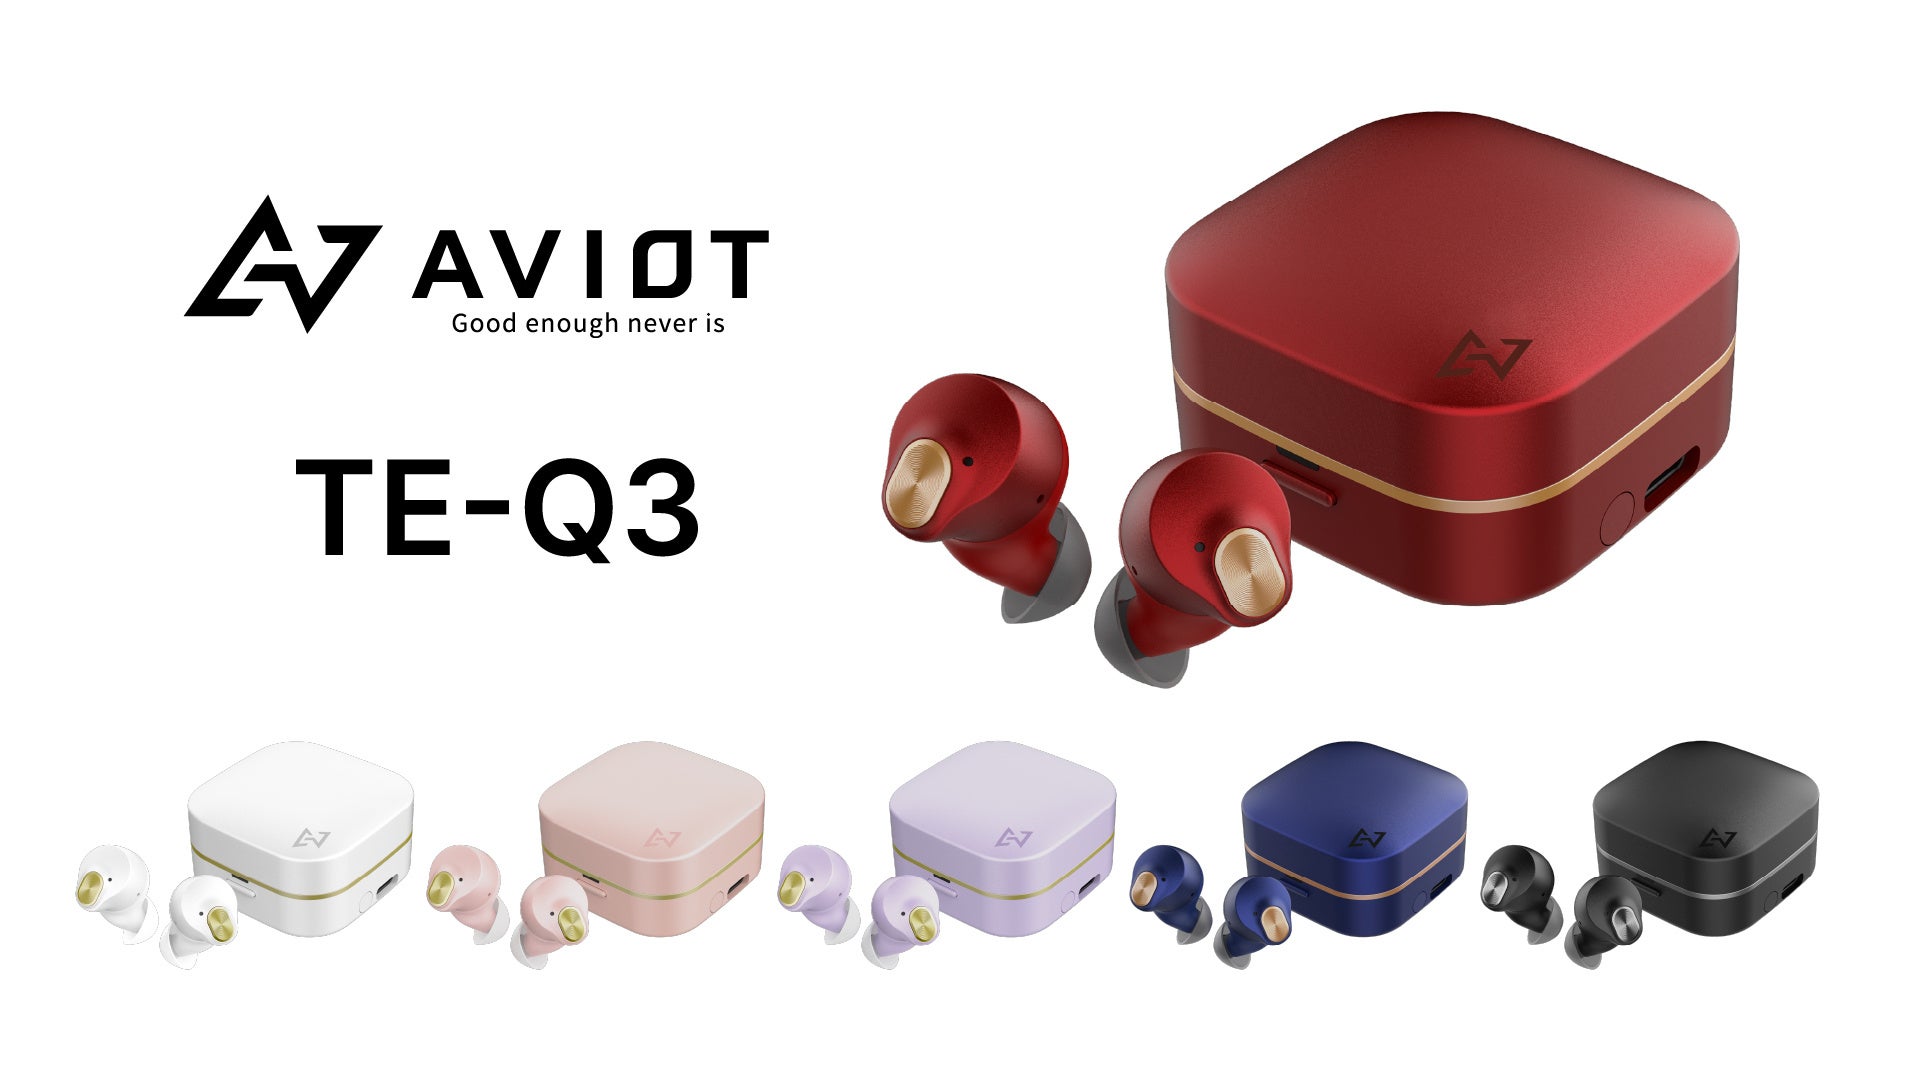 【AVIOT】美しさをまとった業界最小クラス(*1)のノイズキャンセリングイヤホン 「TE-Q3」発売。本日9月20日(水)より予約開始